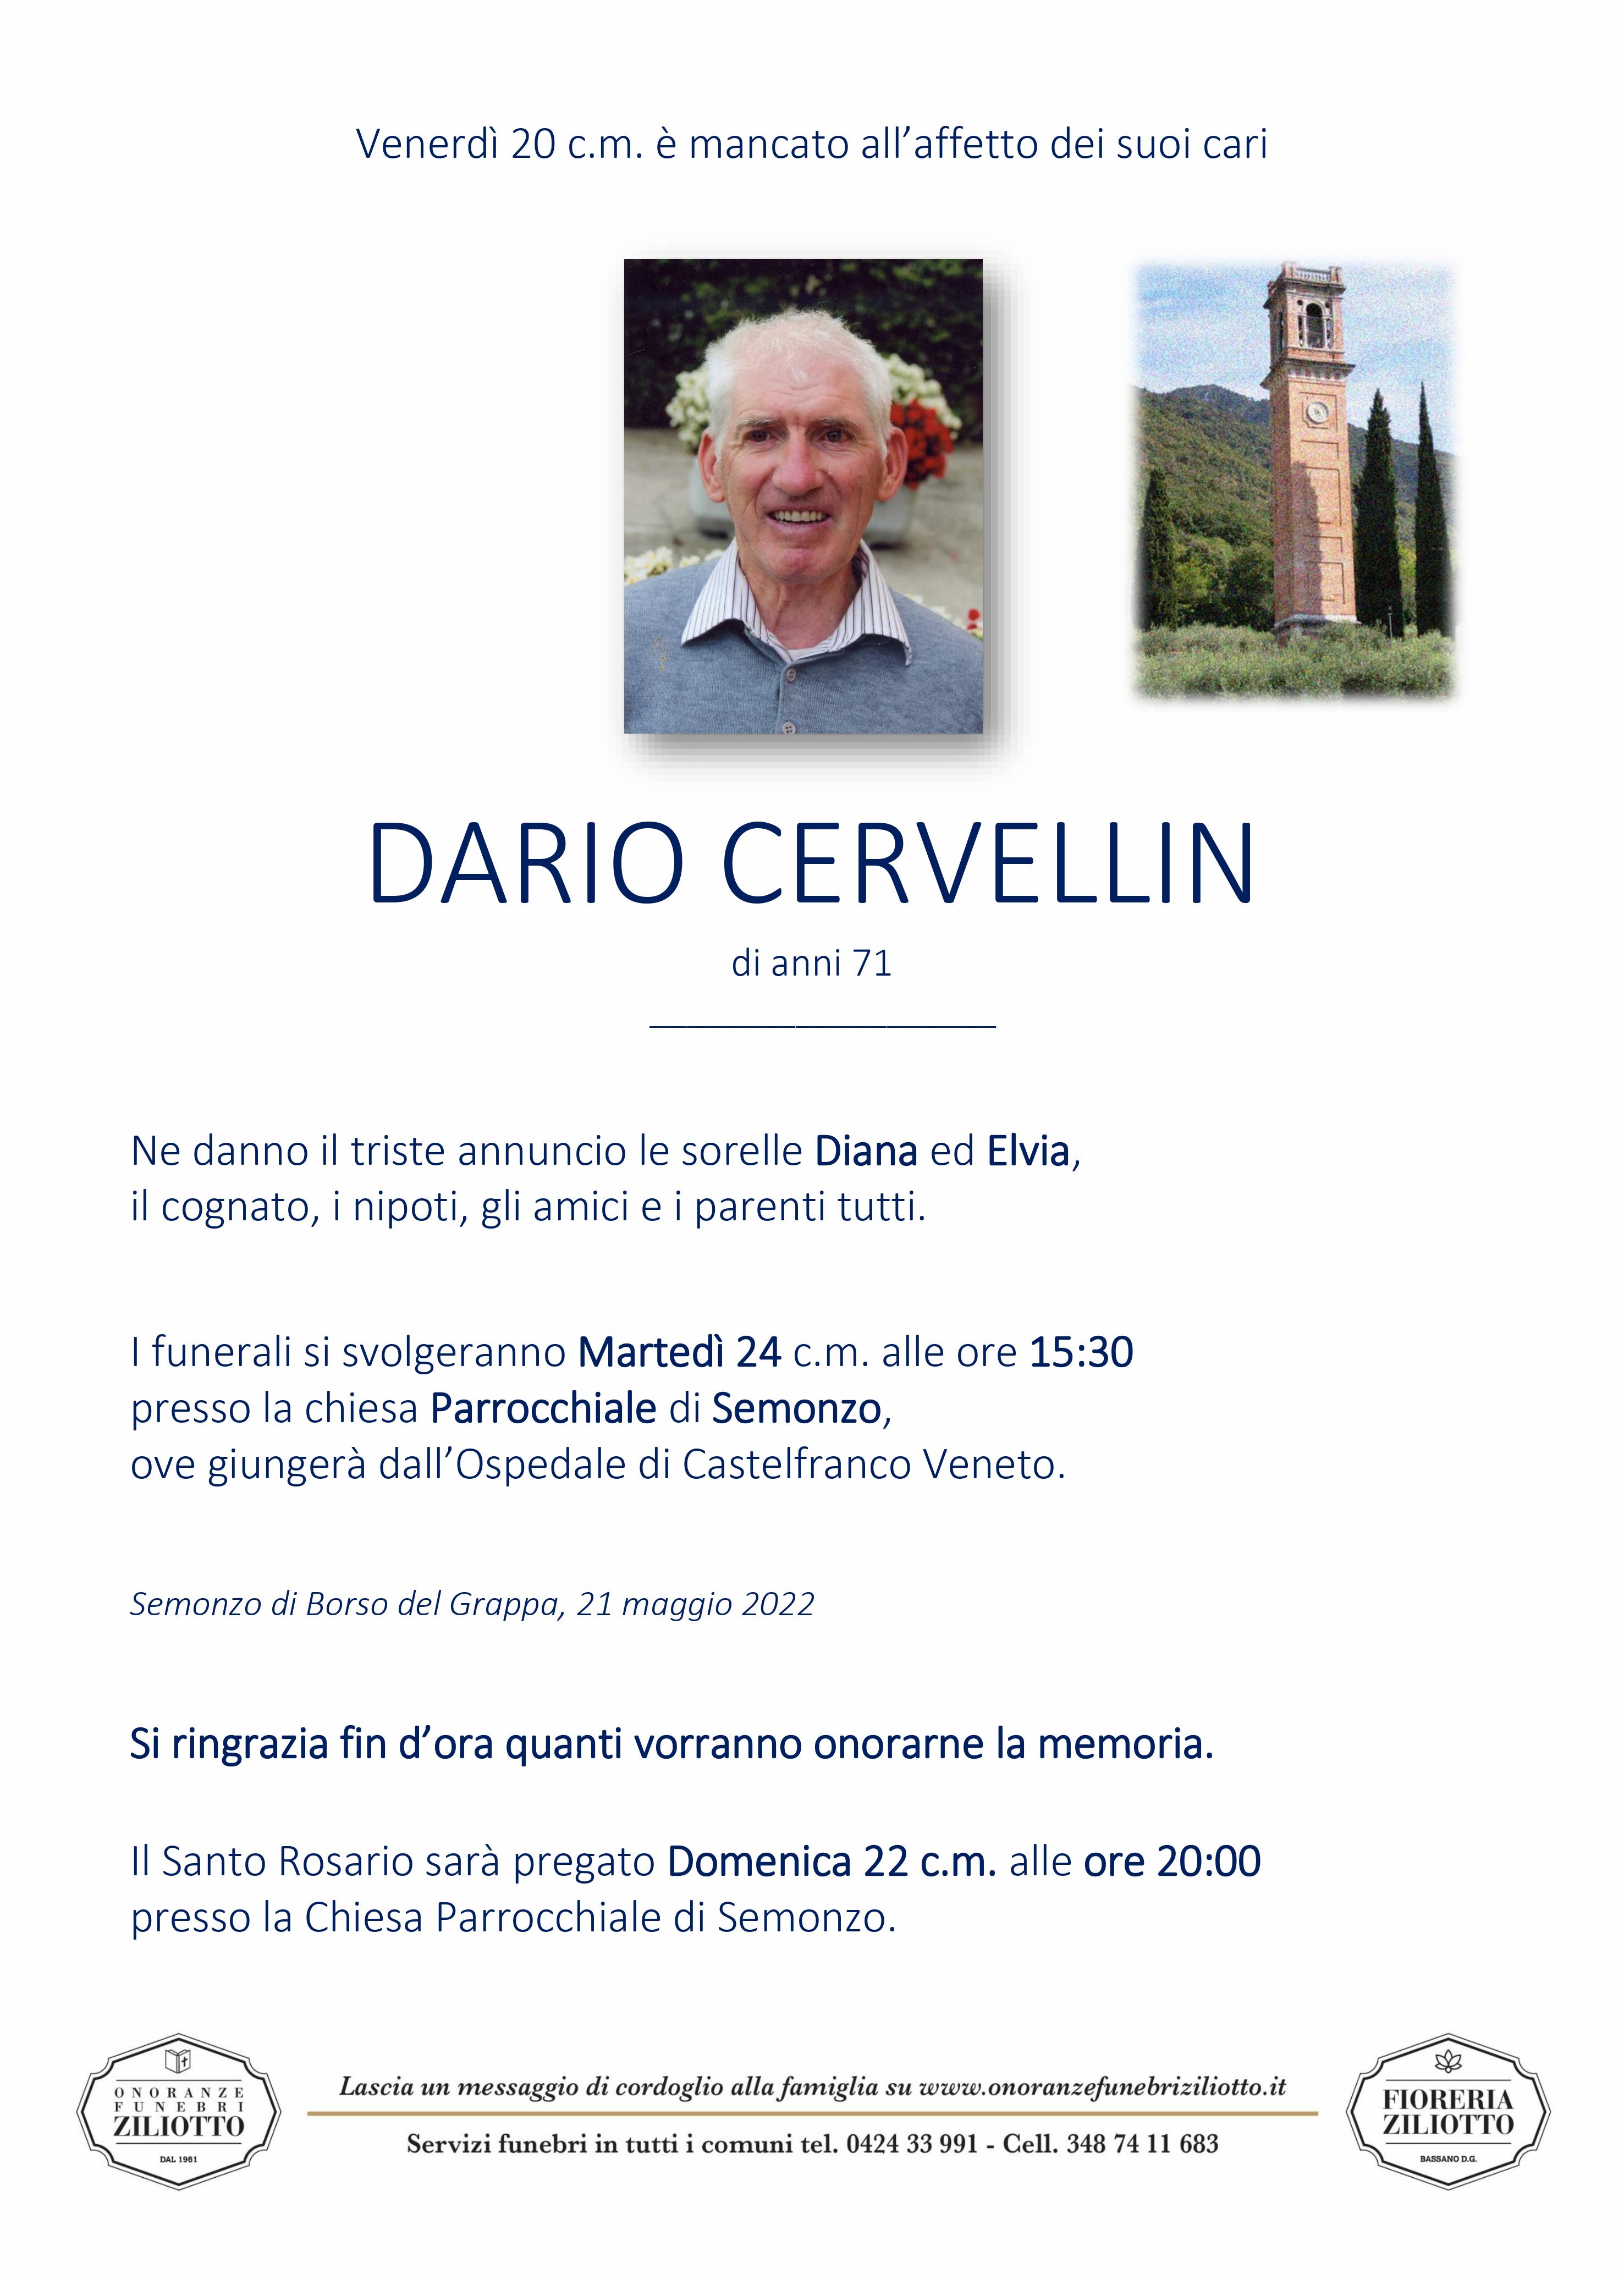 Dario Cervellin - 71 anni - Semonzo di Borso del Gr